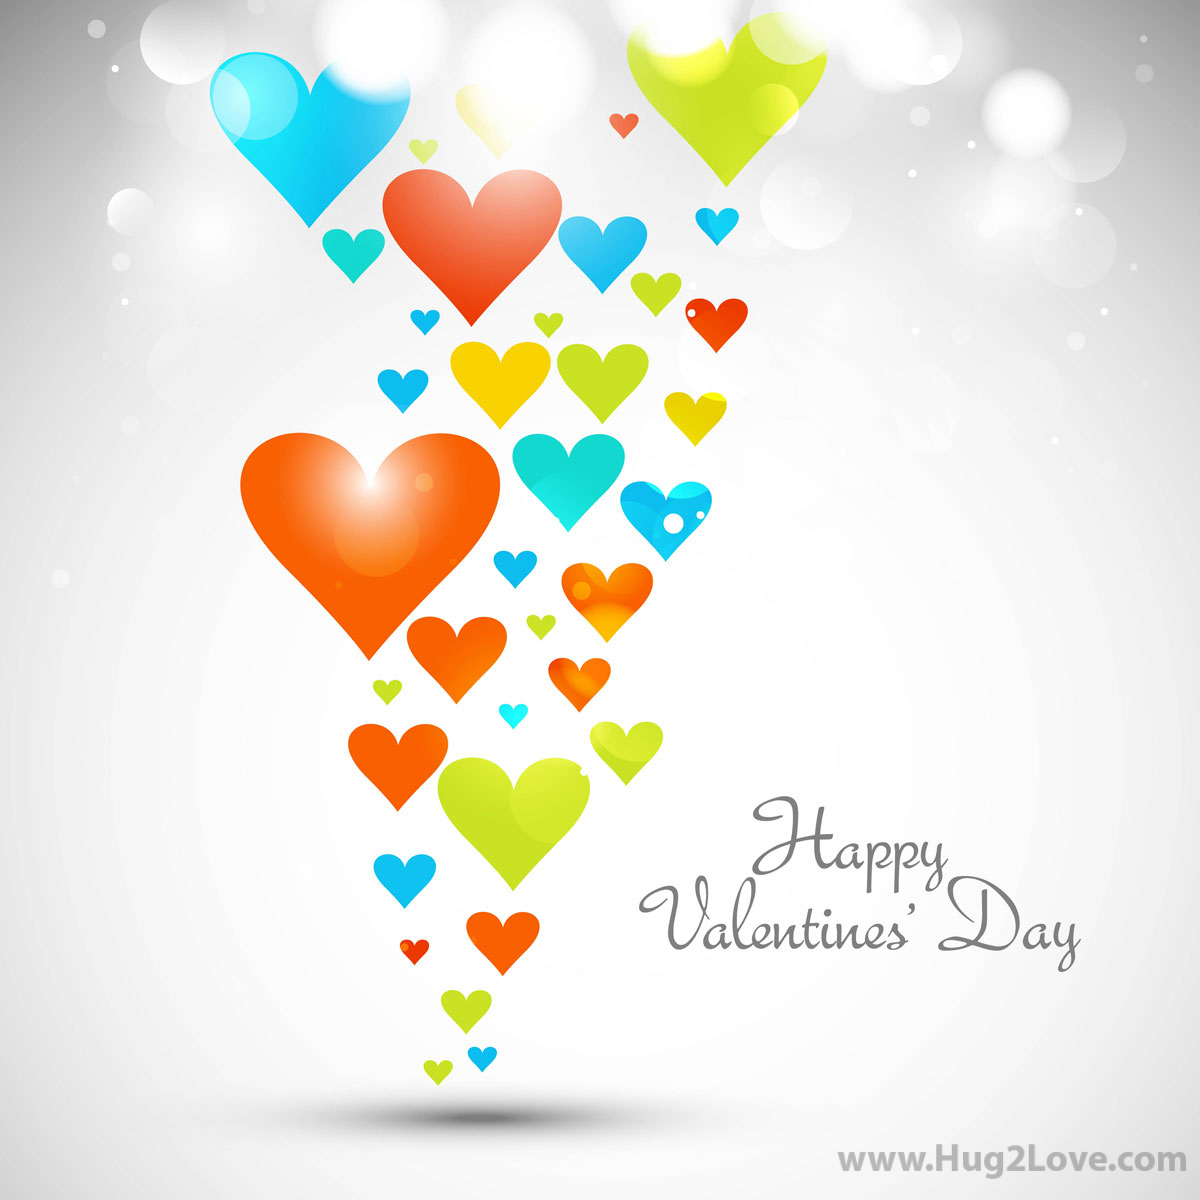 carta da parati di san valentino,cuore,palloncino,illustrazione,disegno grafico,amore